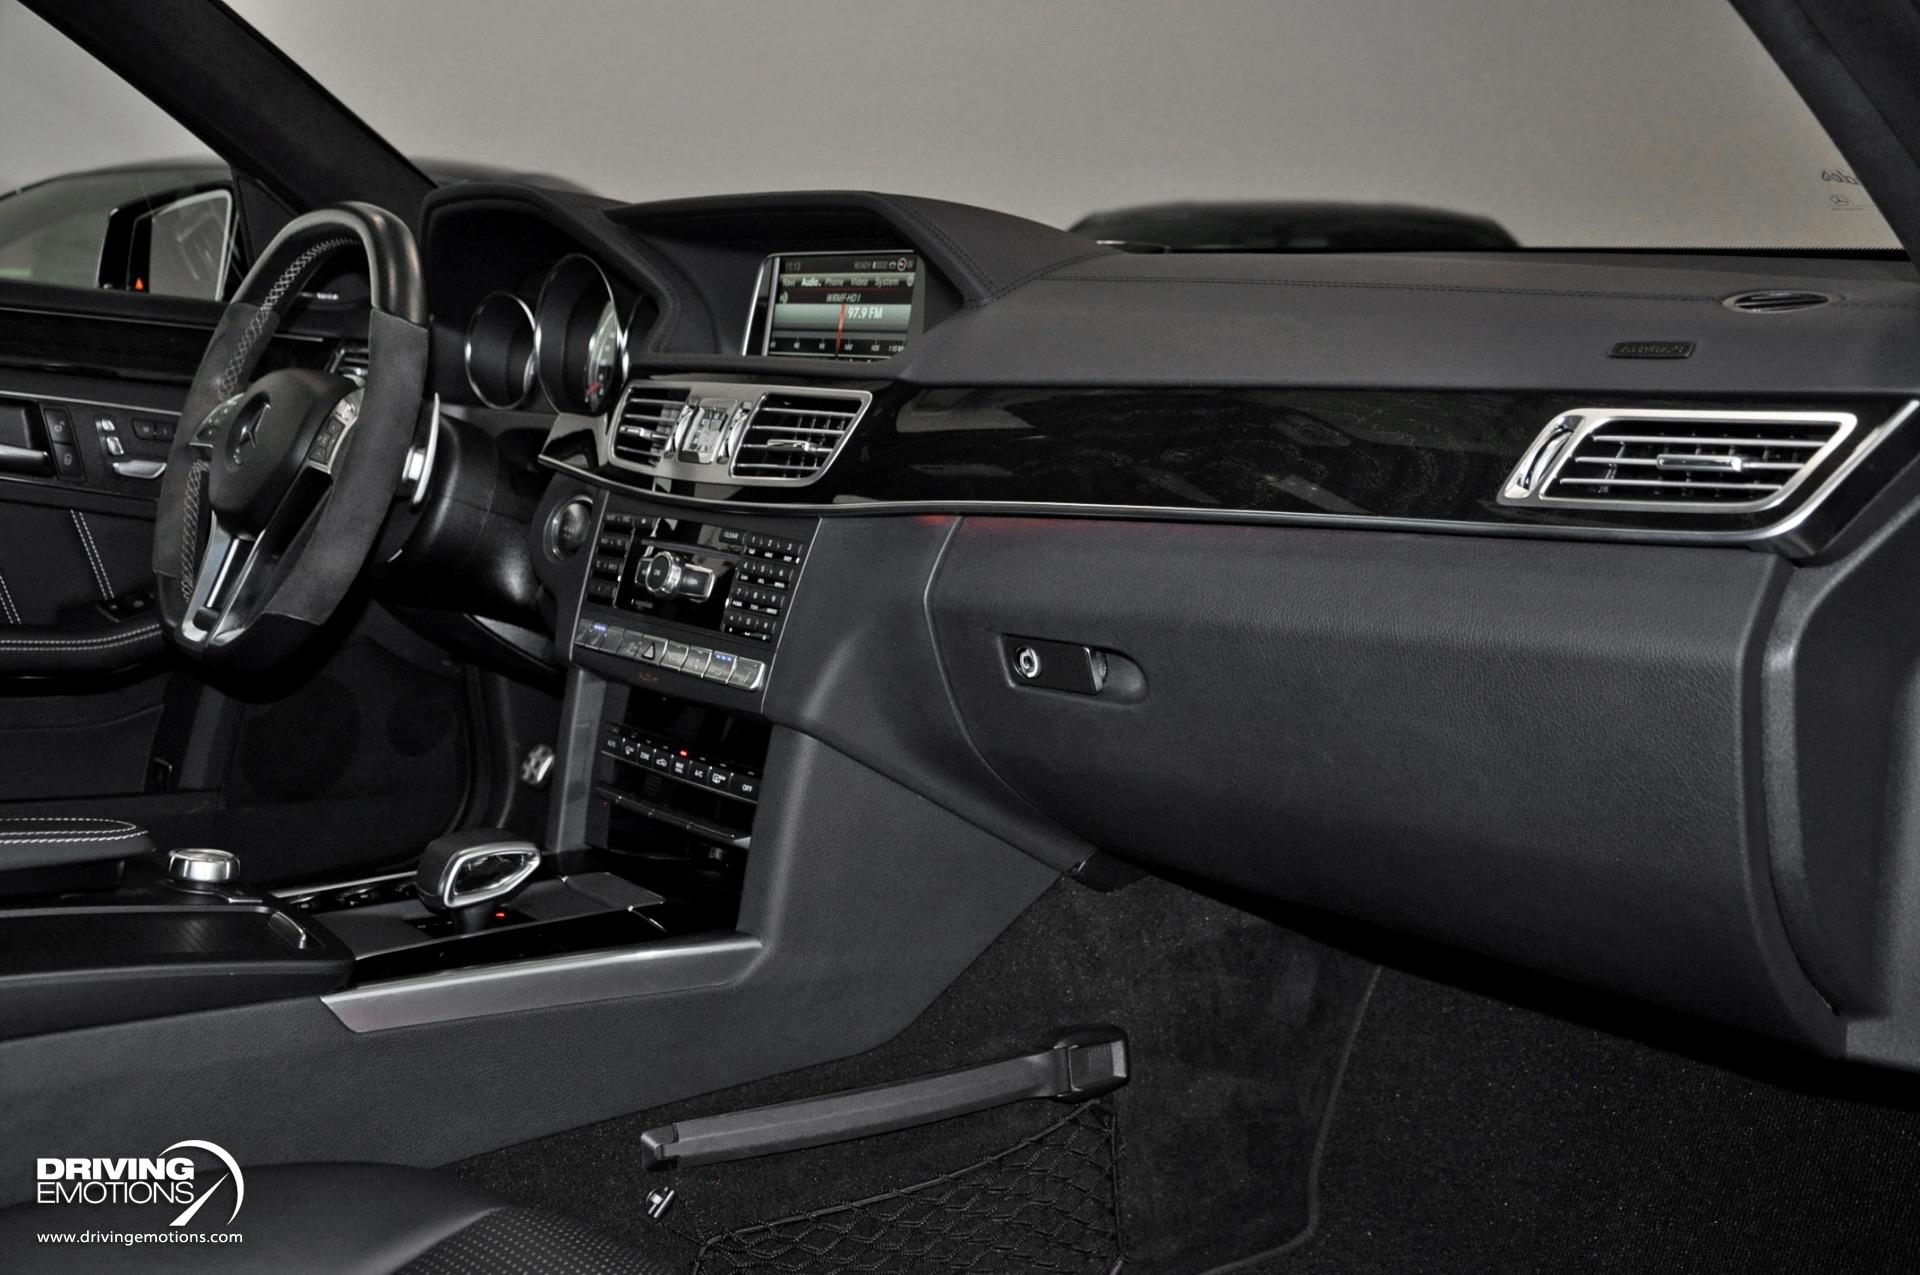 2014 Mercedes Benz E63 Amg S Wagon Renntech E 63 Amg S Model